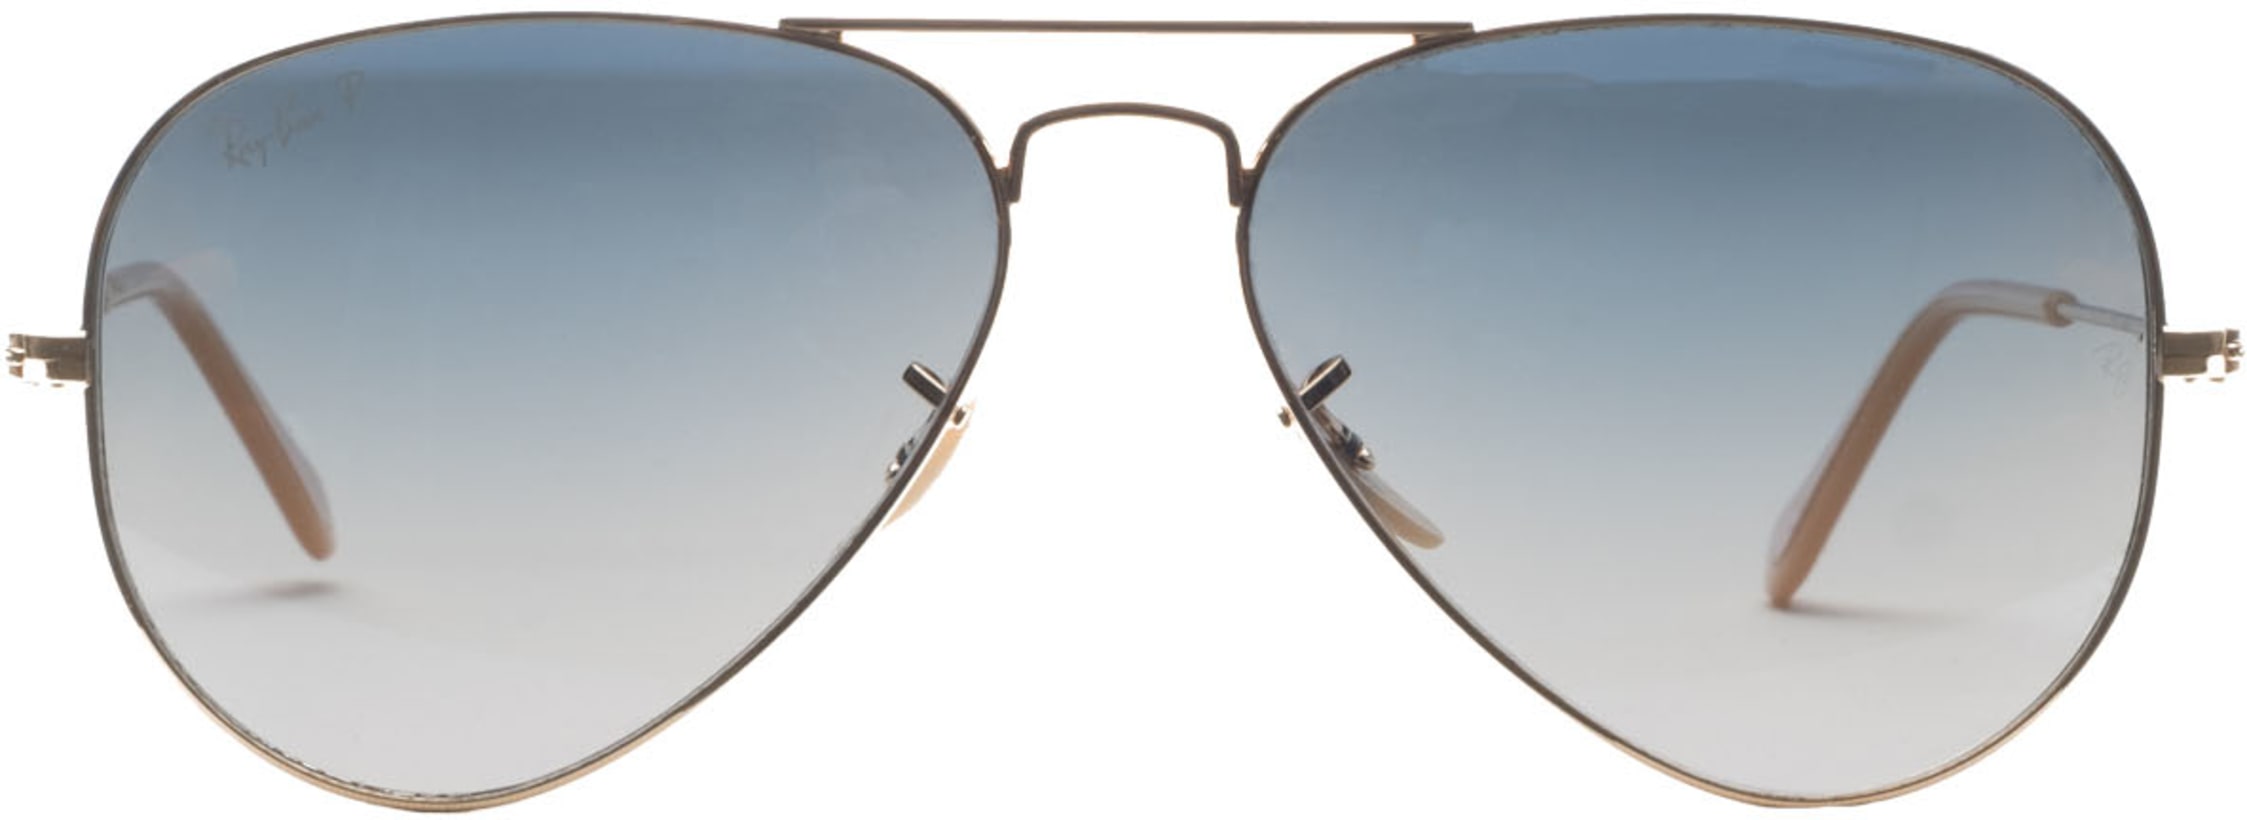 ray ban double shade sunglasses aviator